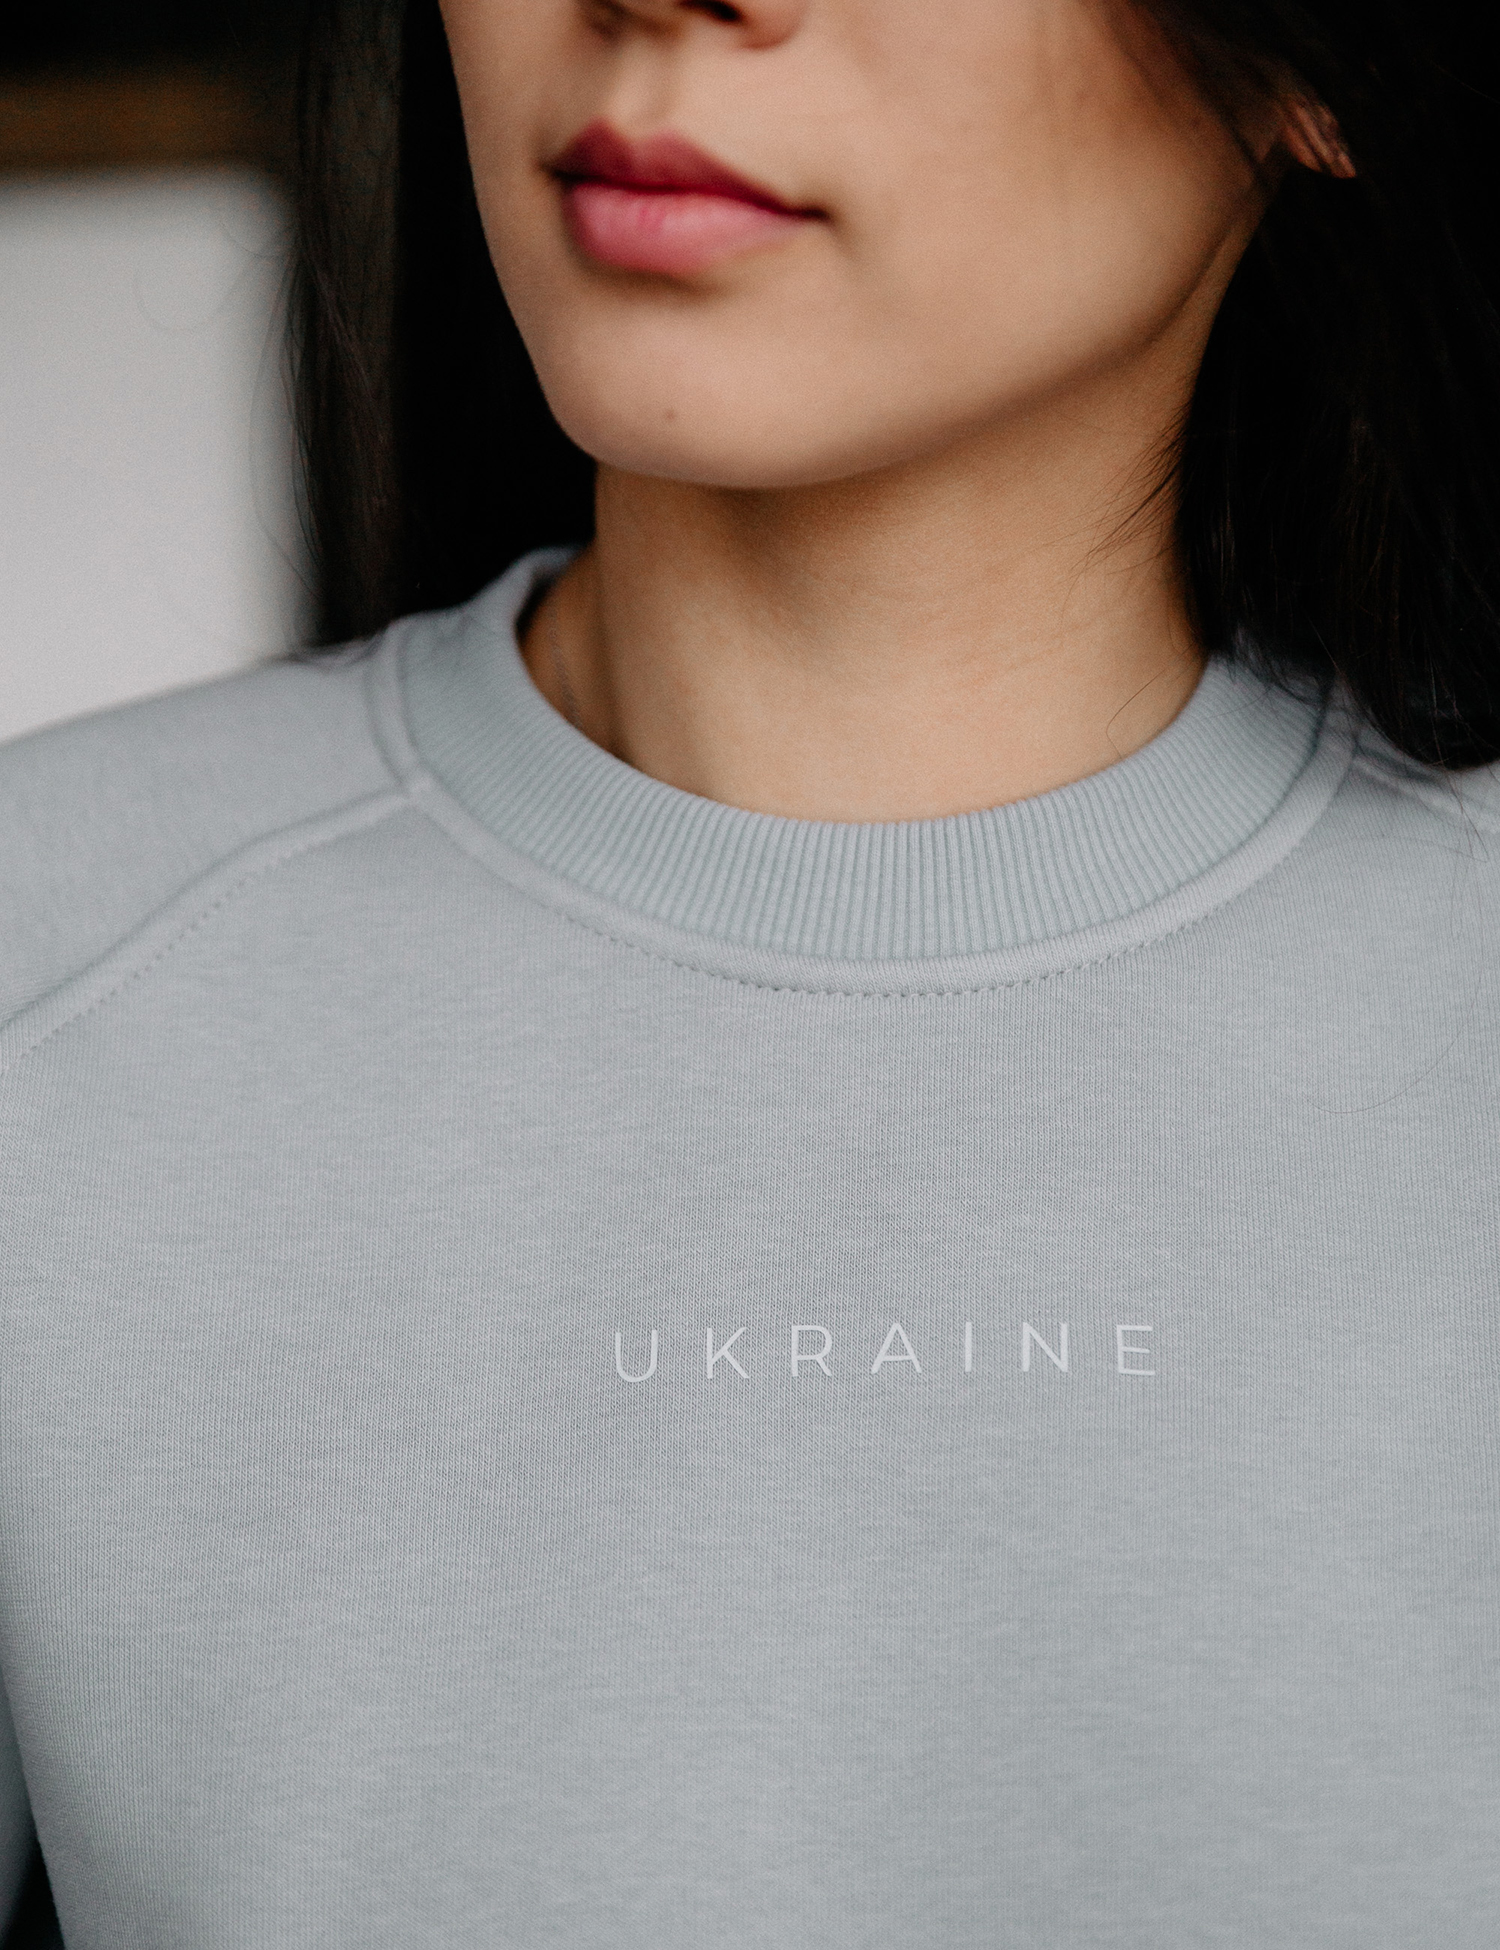 Картинка Світшот "Ukraine" сірий